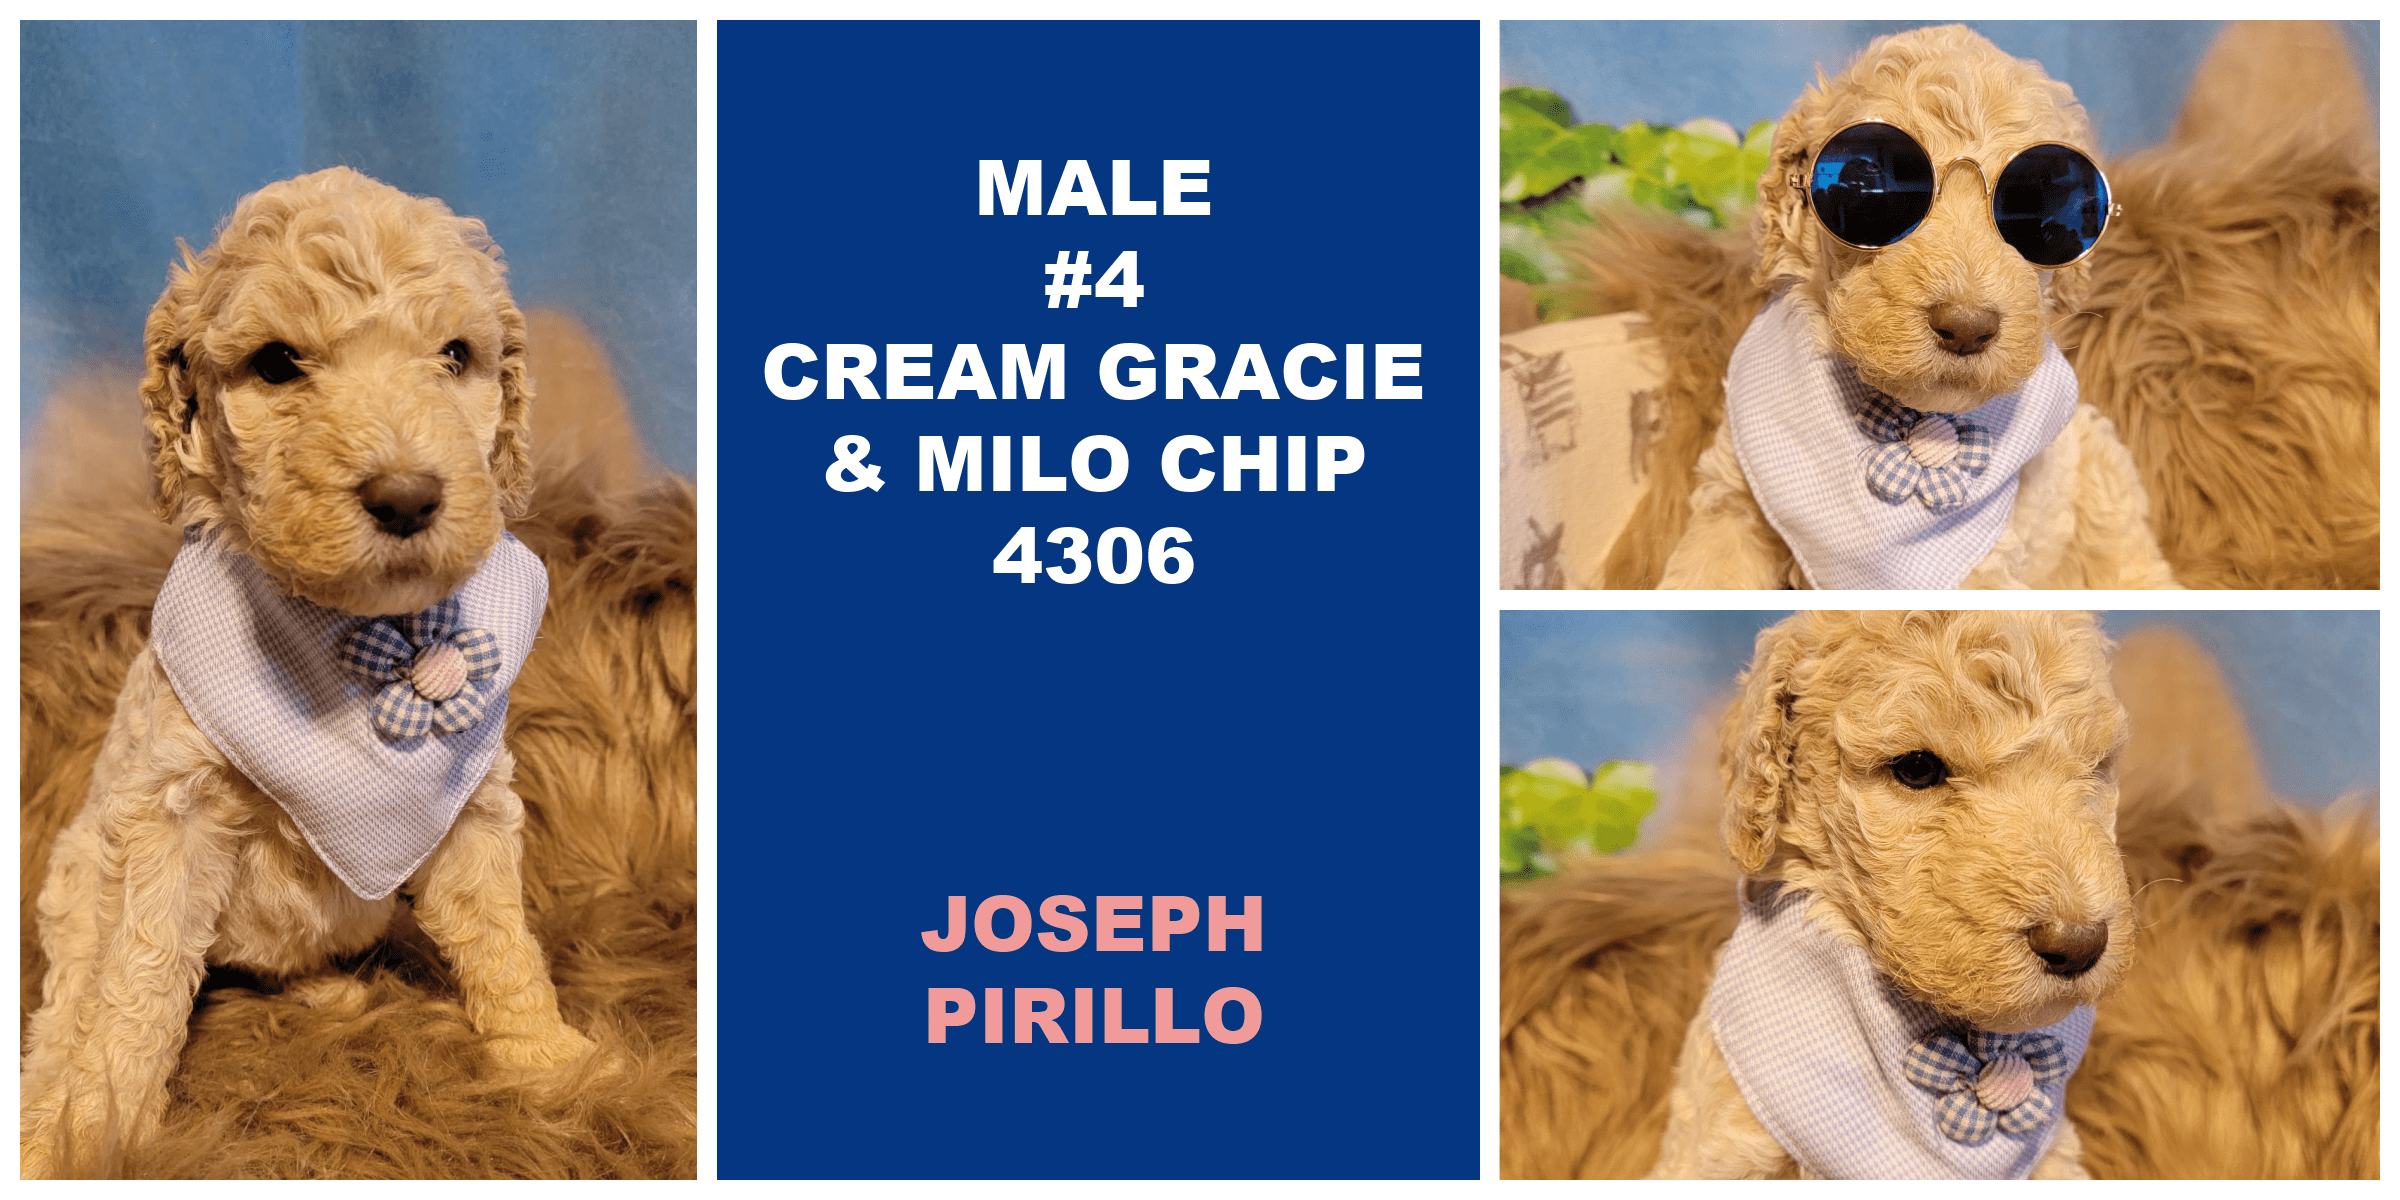 MALE 4 CREAM GRACIE MILO CHIP 4306 JOSEPH PIRILLO